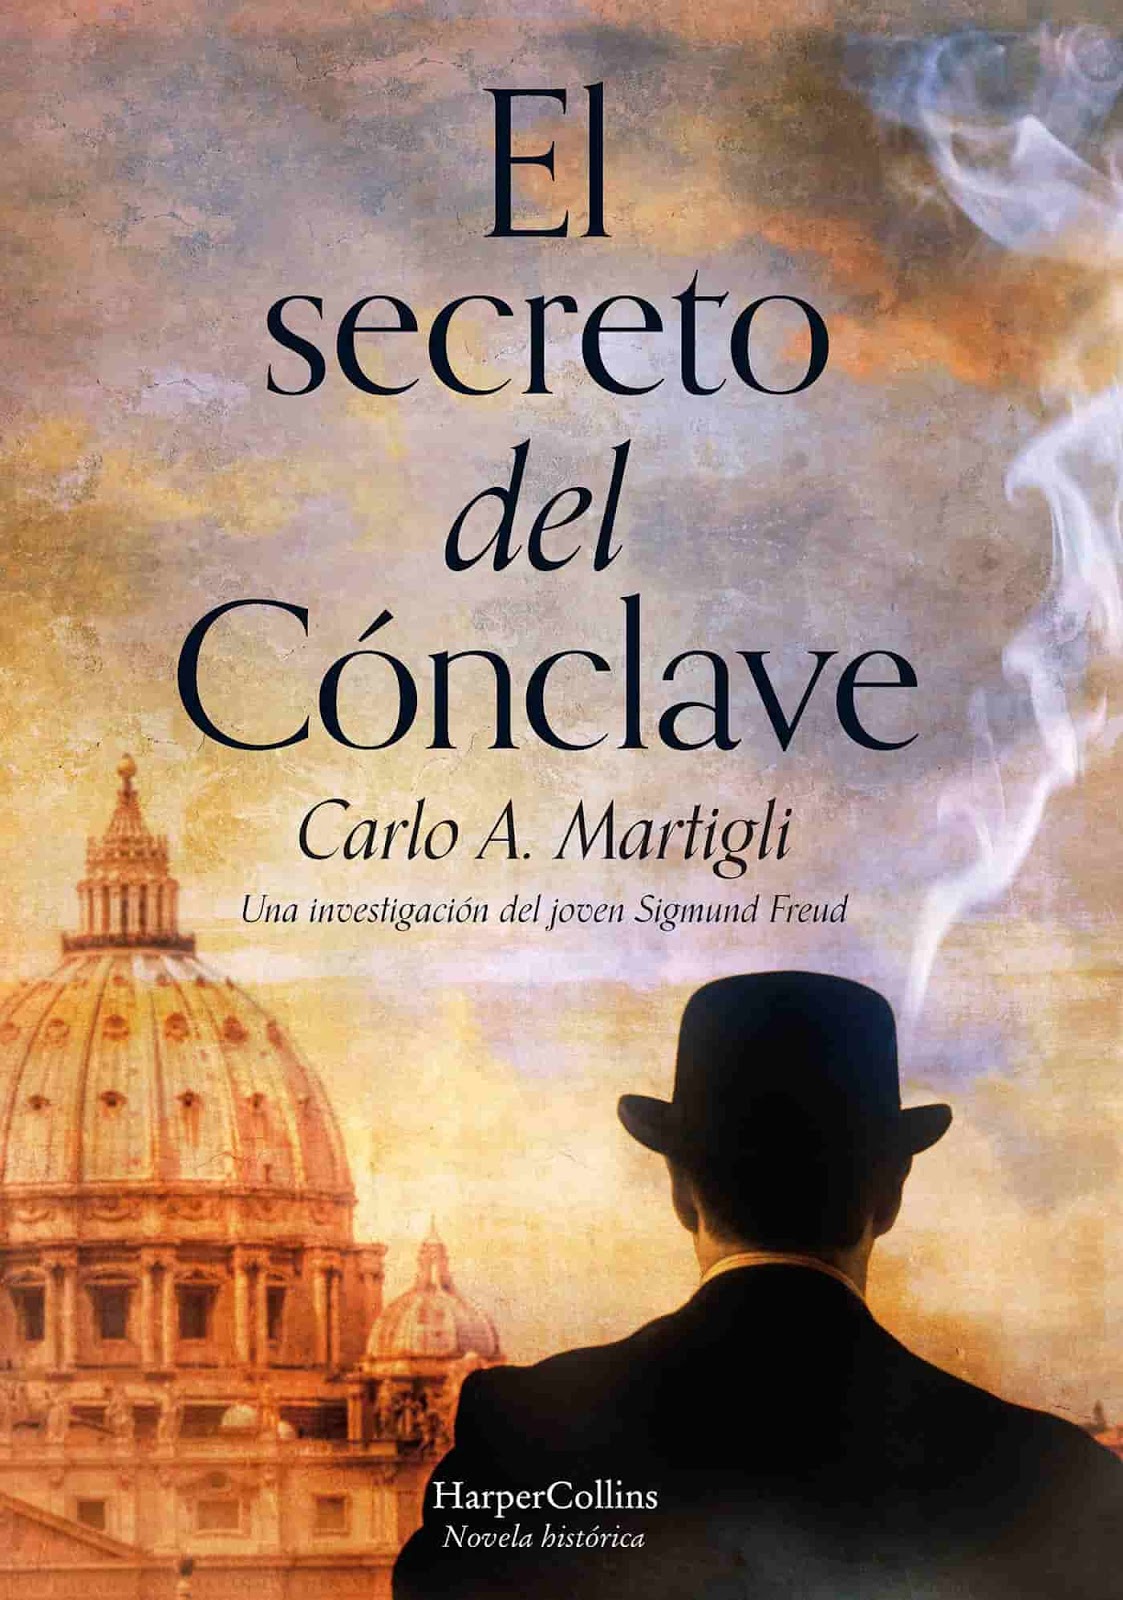 Carlo A Martigli - El Secreto del Cónclave (Multi) (Descargar LIBRO GRATIS) - Librería Gratis ...